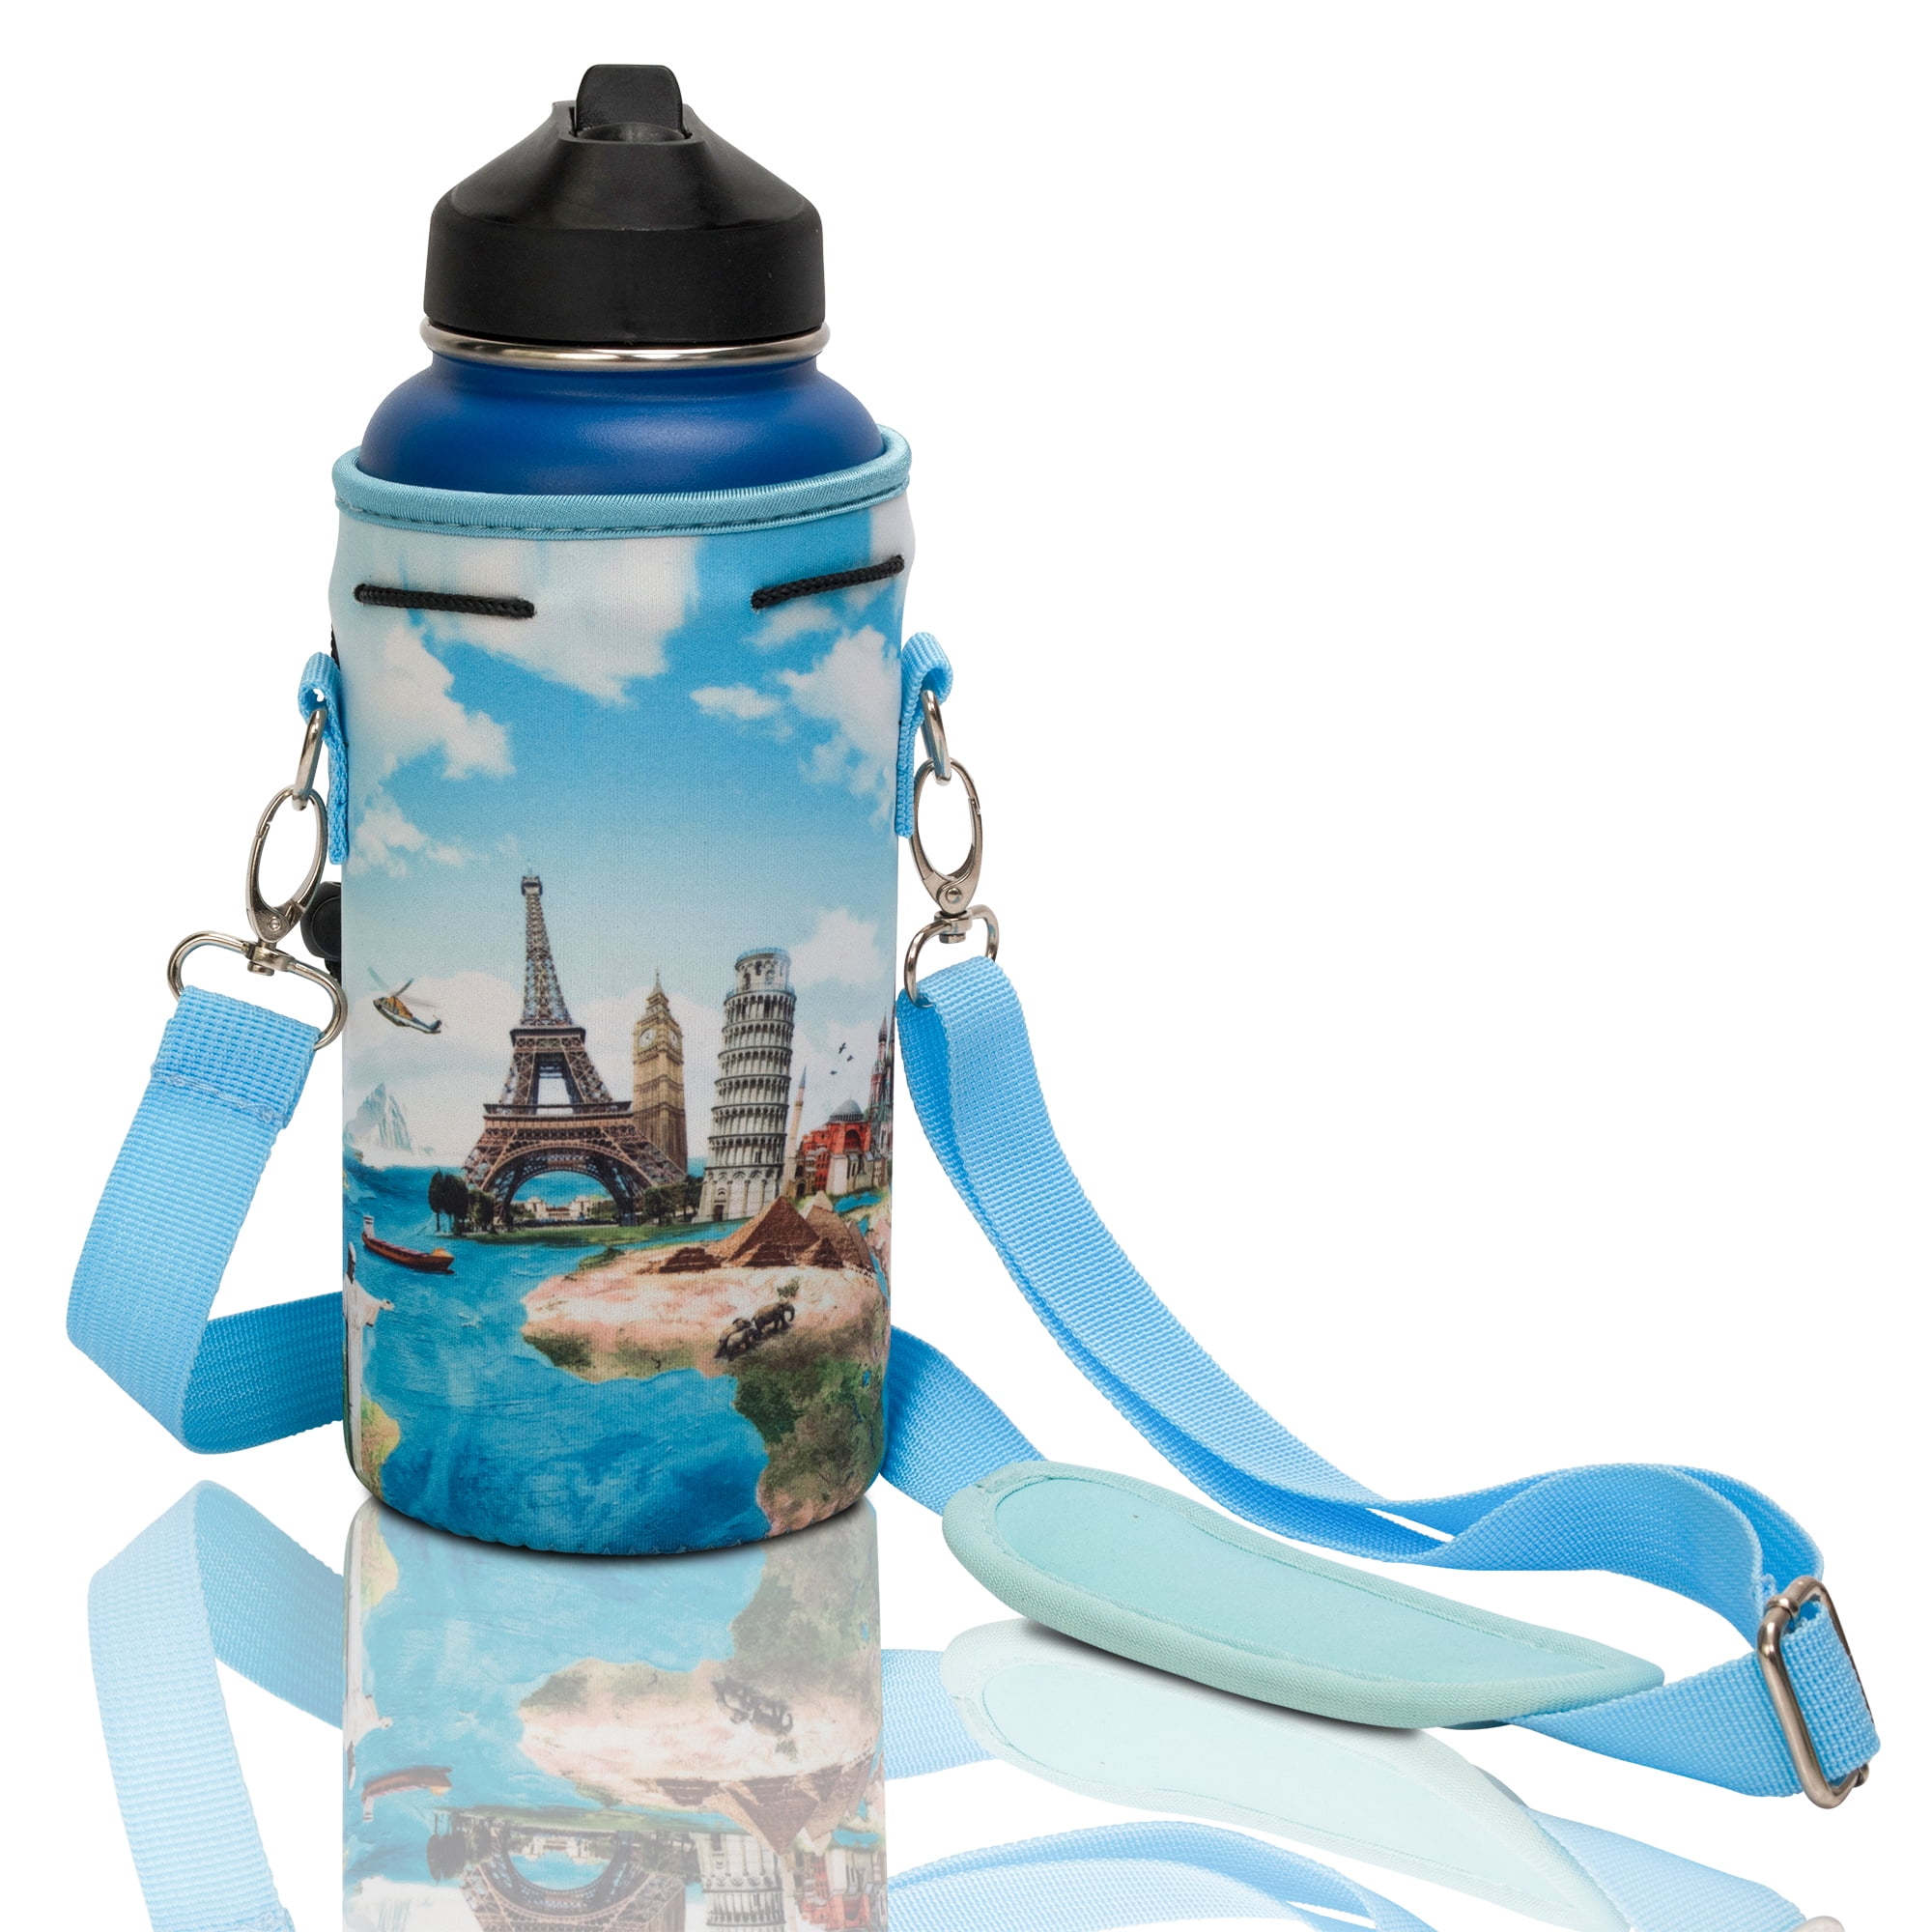 Nuovoware Water Bottle Carrier Bag Fits Stanley 40 oz Tumbler with Handle, Bottle Bag with Adjustable Shoulder Strap, Neoprene Bottle Holder for